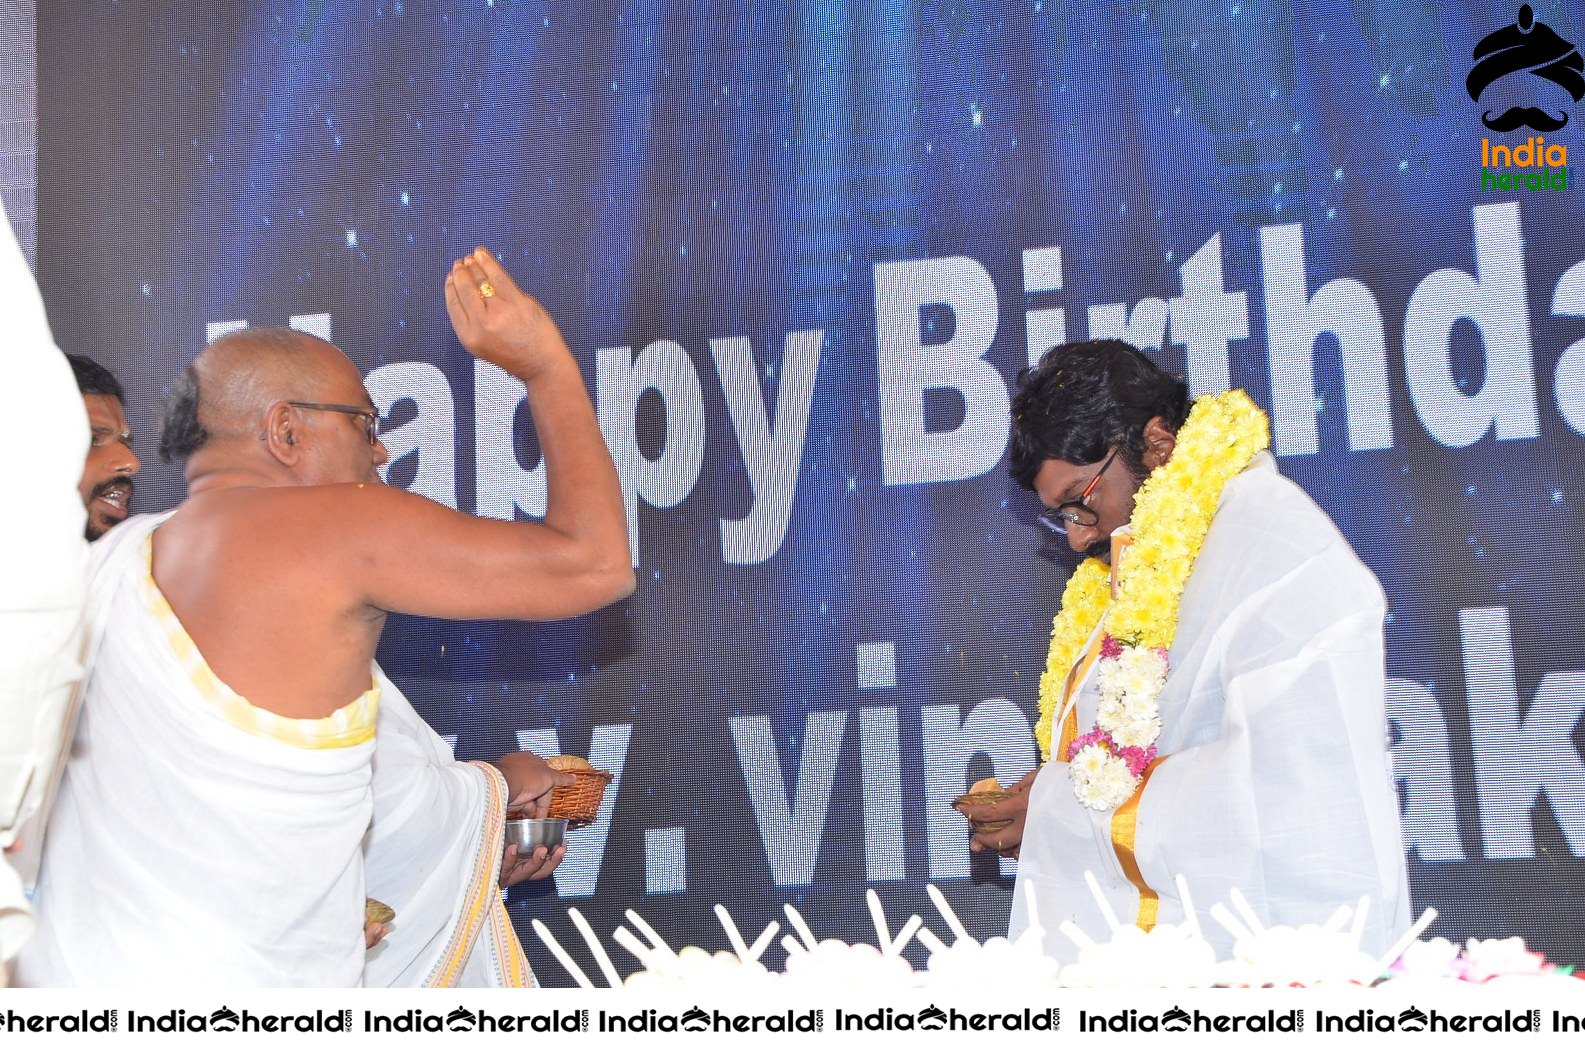 VV Vinayak Birthday Celebrations Set 1